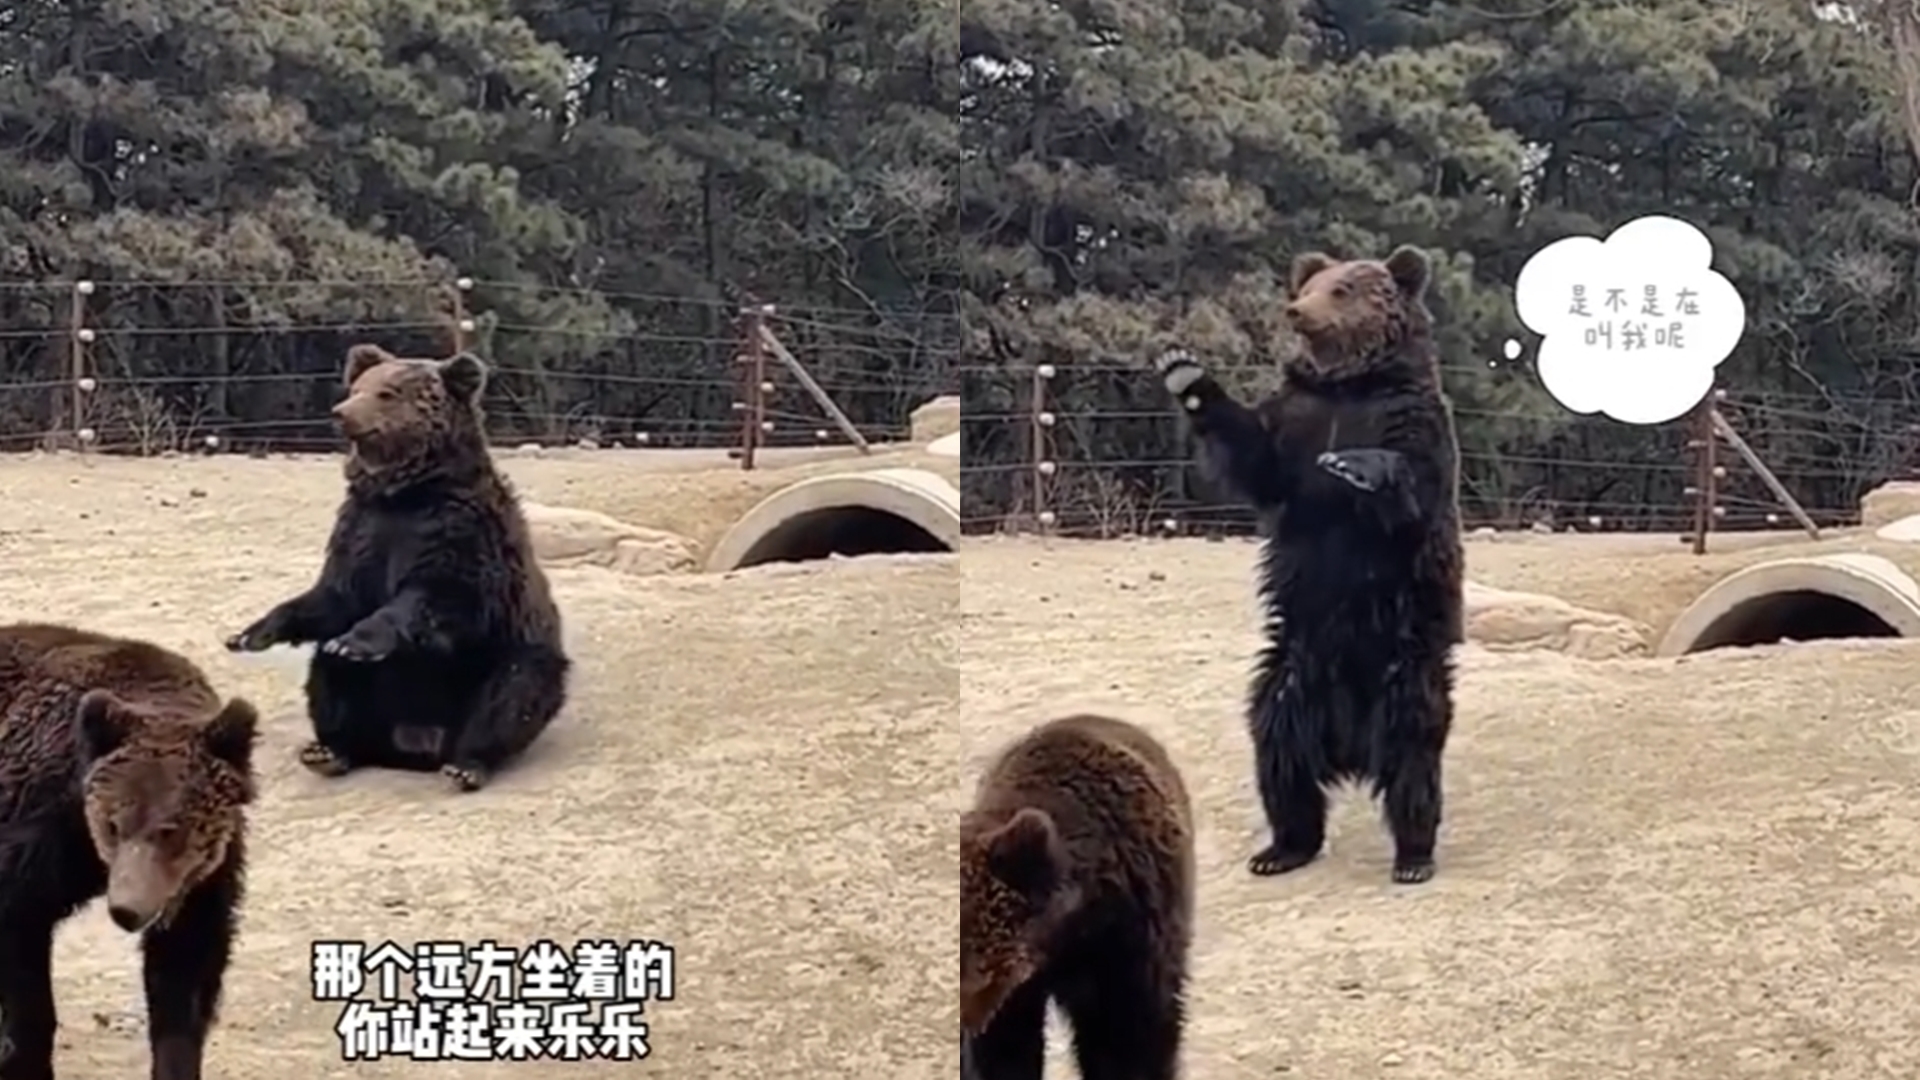 工讀生出來！棕熊微笑「起身揮手打招呼」　動物園揭真相反遭網轟